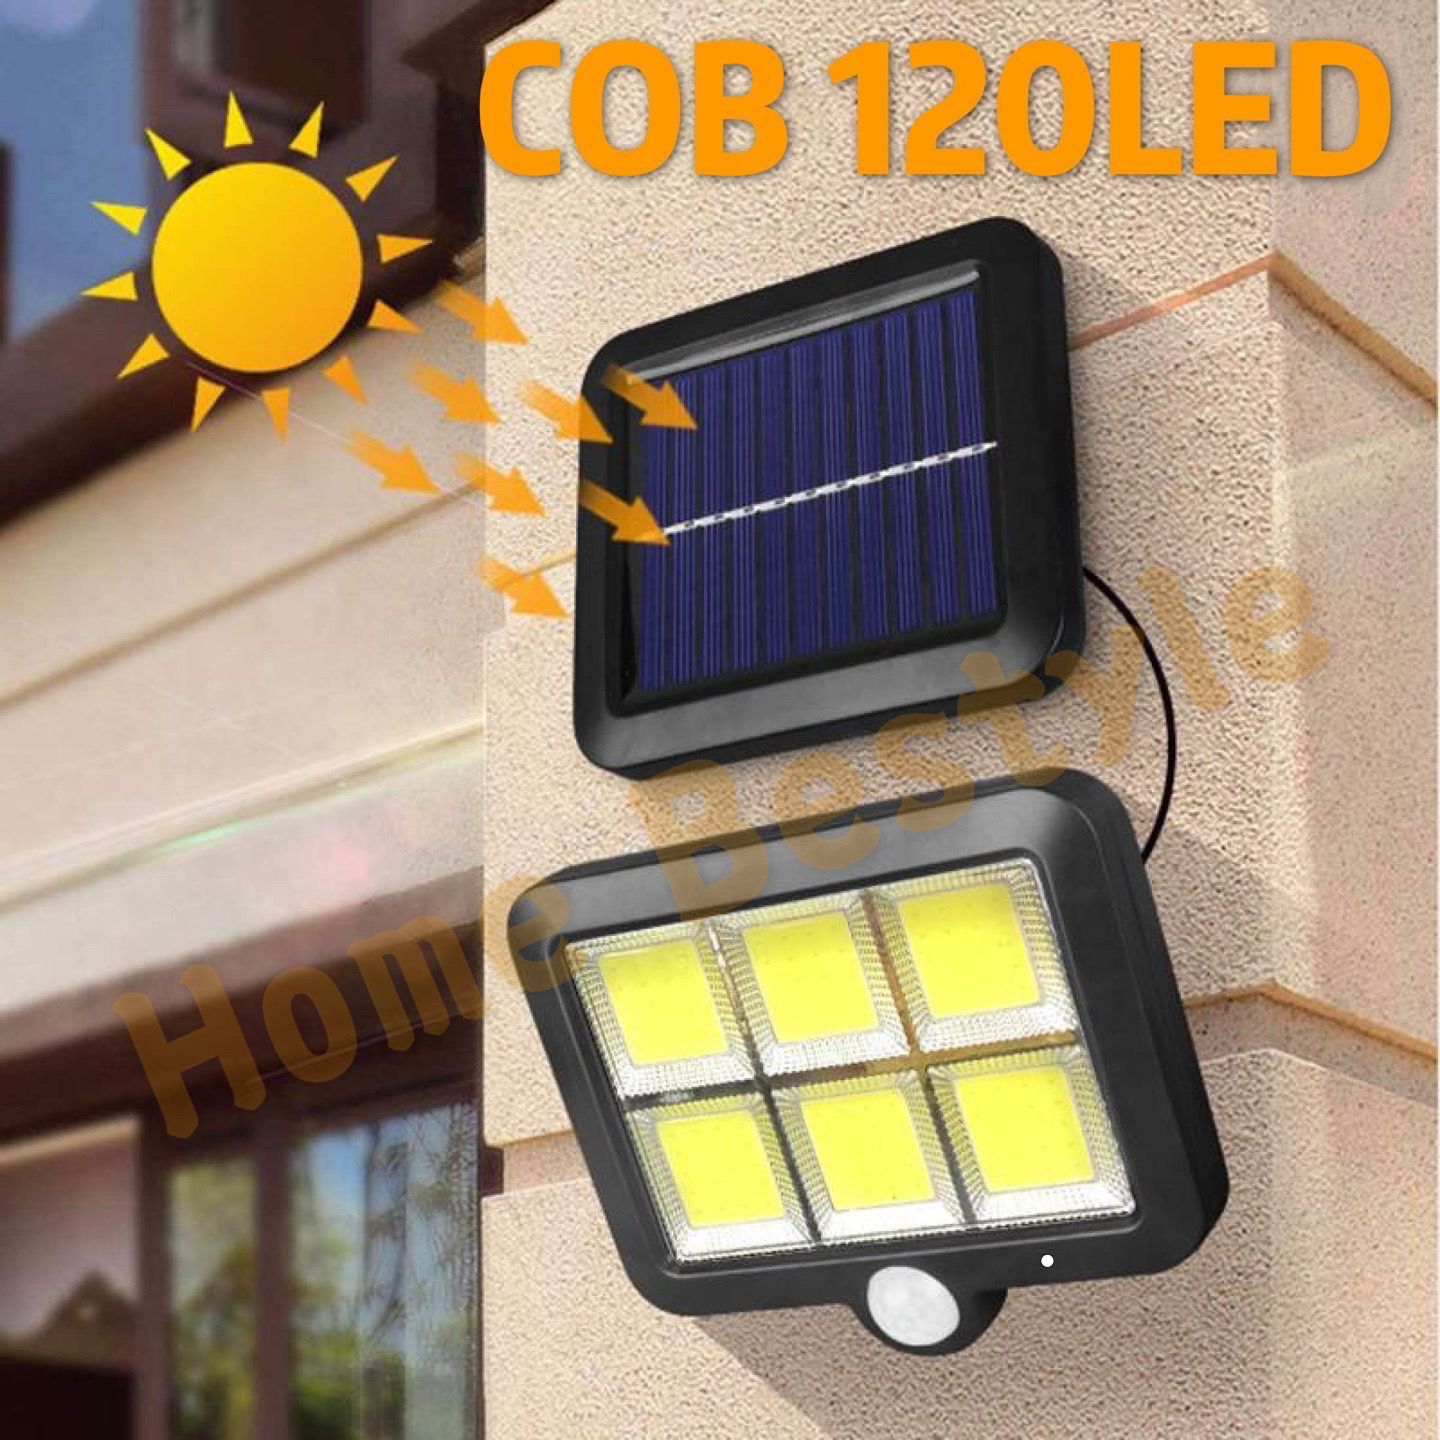 เชิงเทียนโคมไฟติดผนัง ไฟโซล่าเซล ไฟ LED ไฟสปอร์ตไลท์ ใช้พลังานแสงอาทิตย์ ปรับมุมส่องได้ 180 องศา สว่างจ้า 3โหมด ตรวจจับความเคลื่อนไหว ทนแดด กันน้ำ Outdoor Solar Wall Light